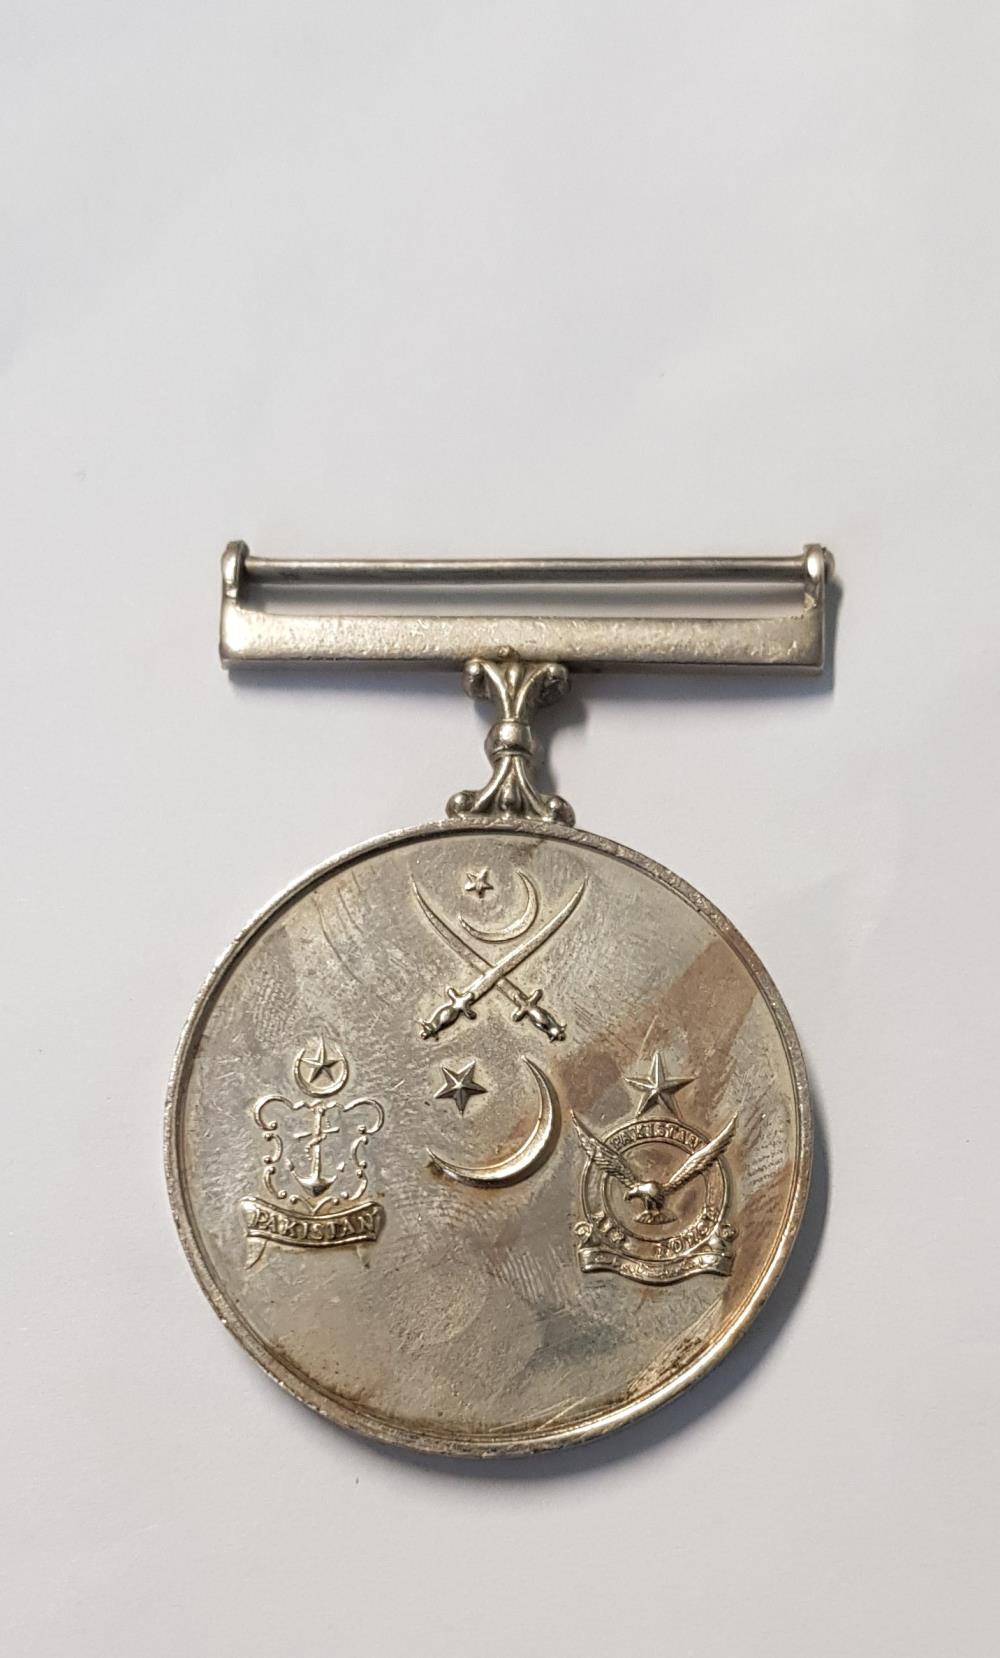 Pakistan - War Medal 1965